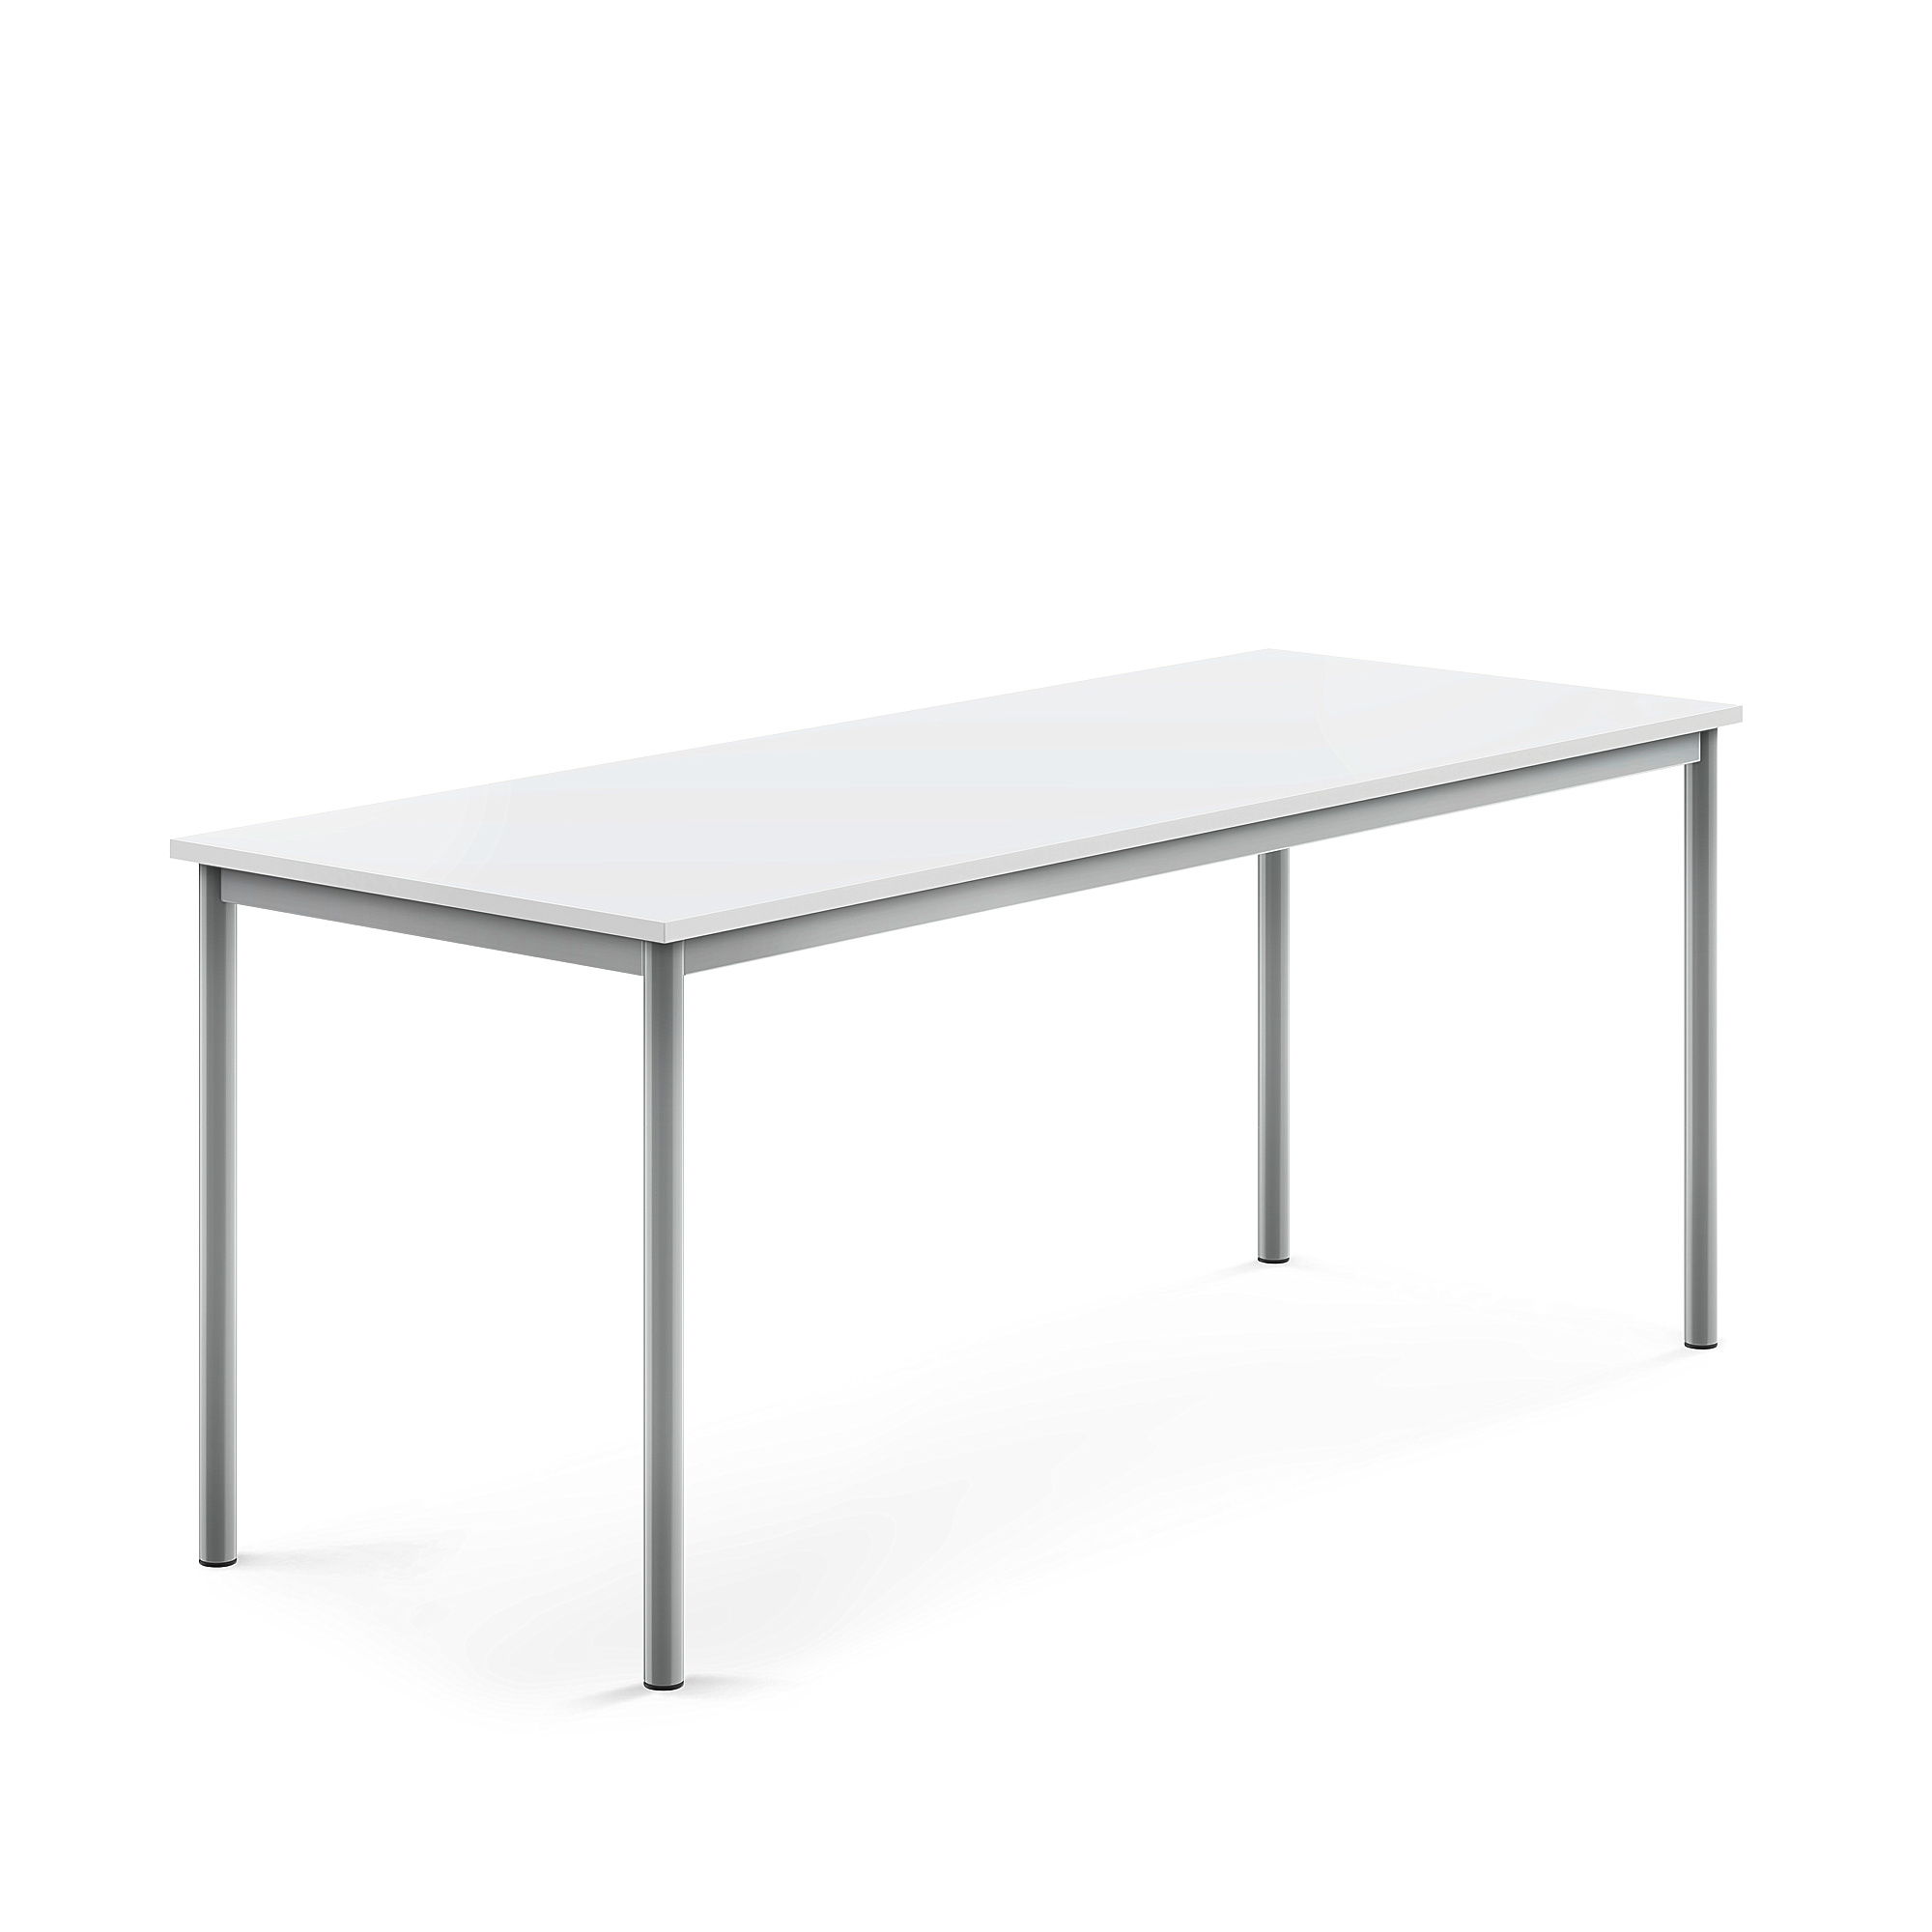 Stůl BORÅS, 1800x700x720 mm, stříbrné nohy, HPL deska, bílá